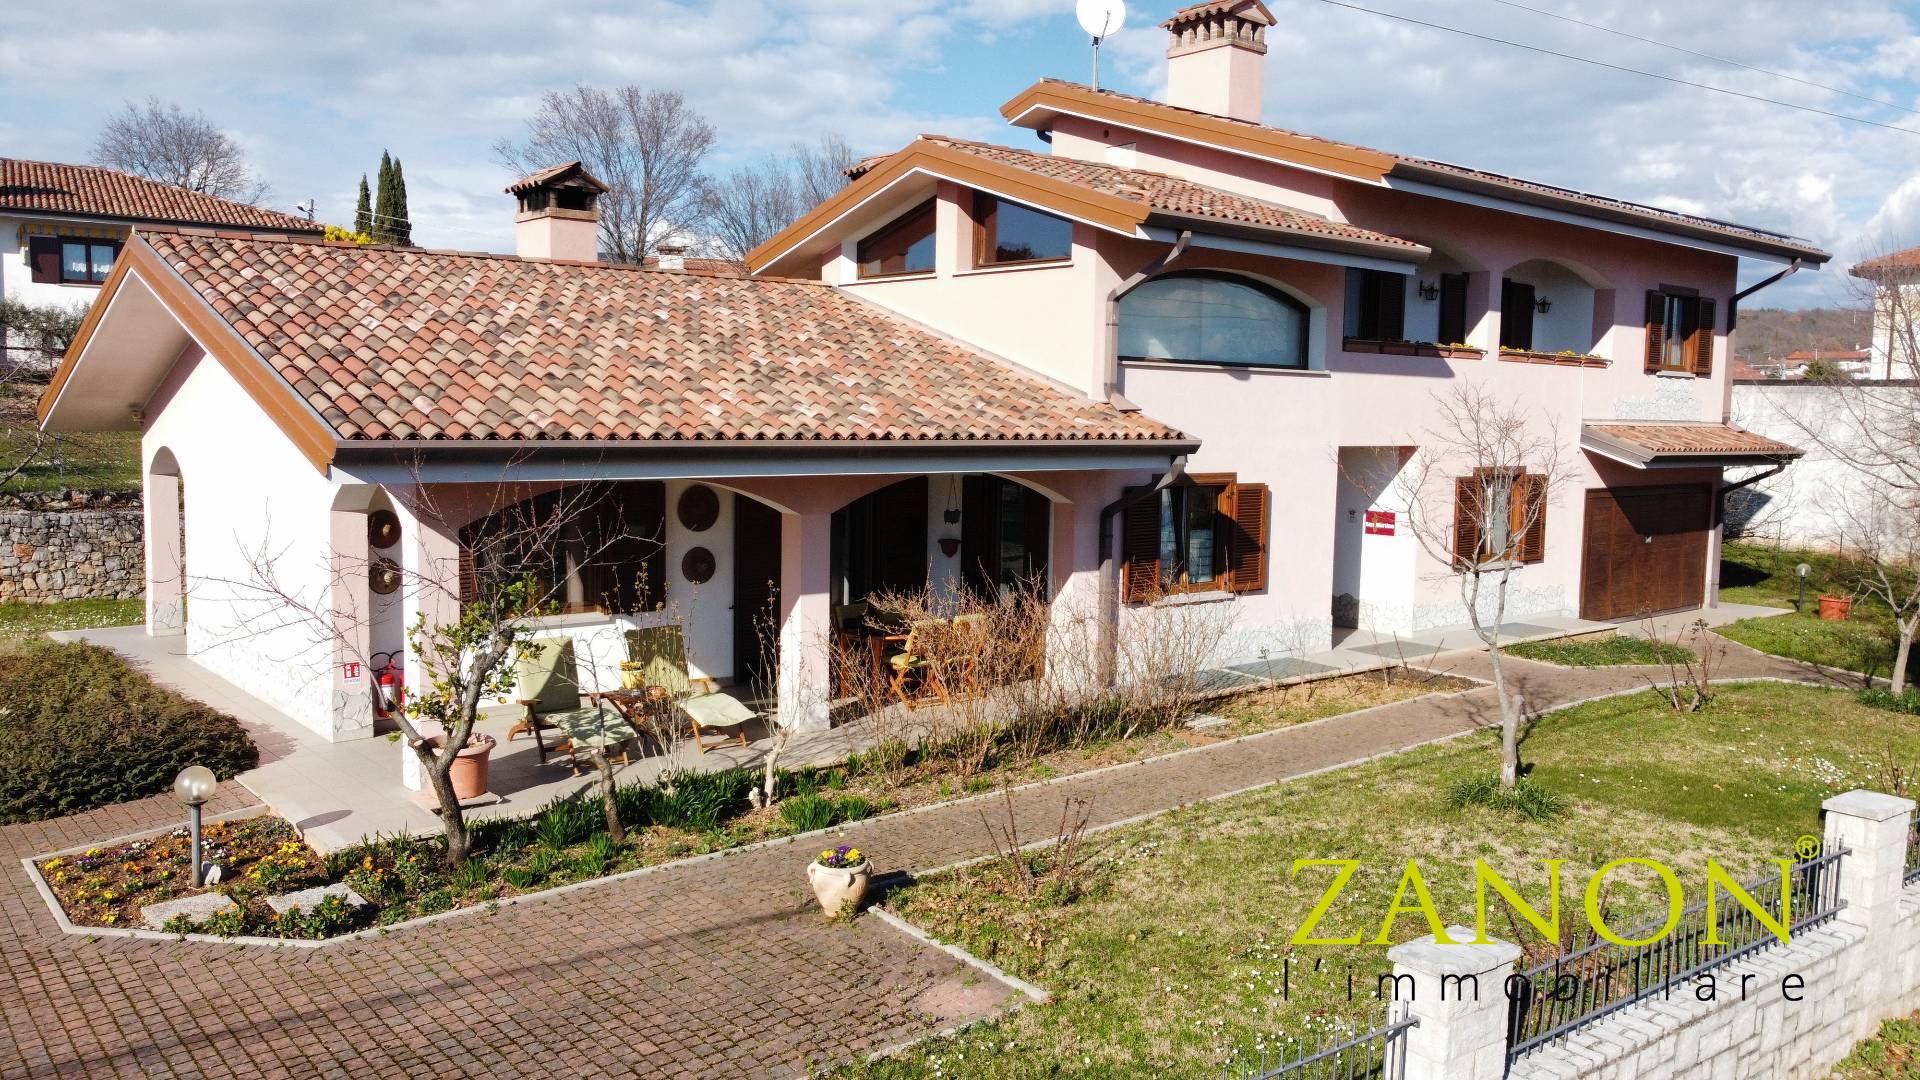 Villa in vendita a Sagrado, 10 locali, zona Località: SanMartinodelCarso, Trattative riservate | PortaleAgenzieImmobiliari.it